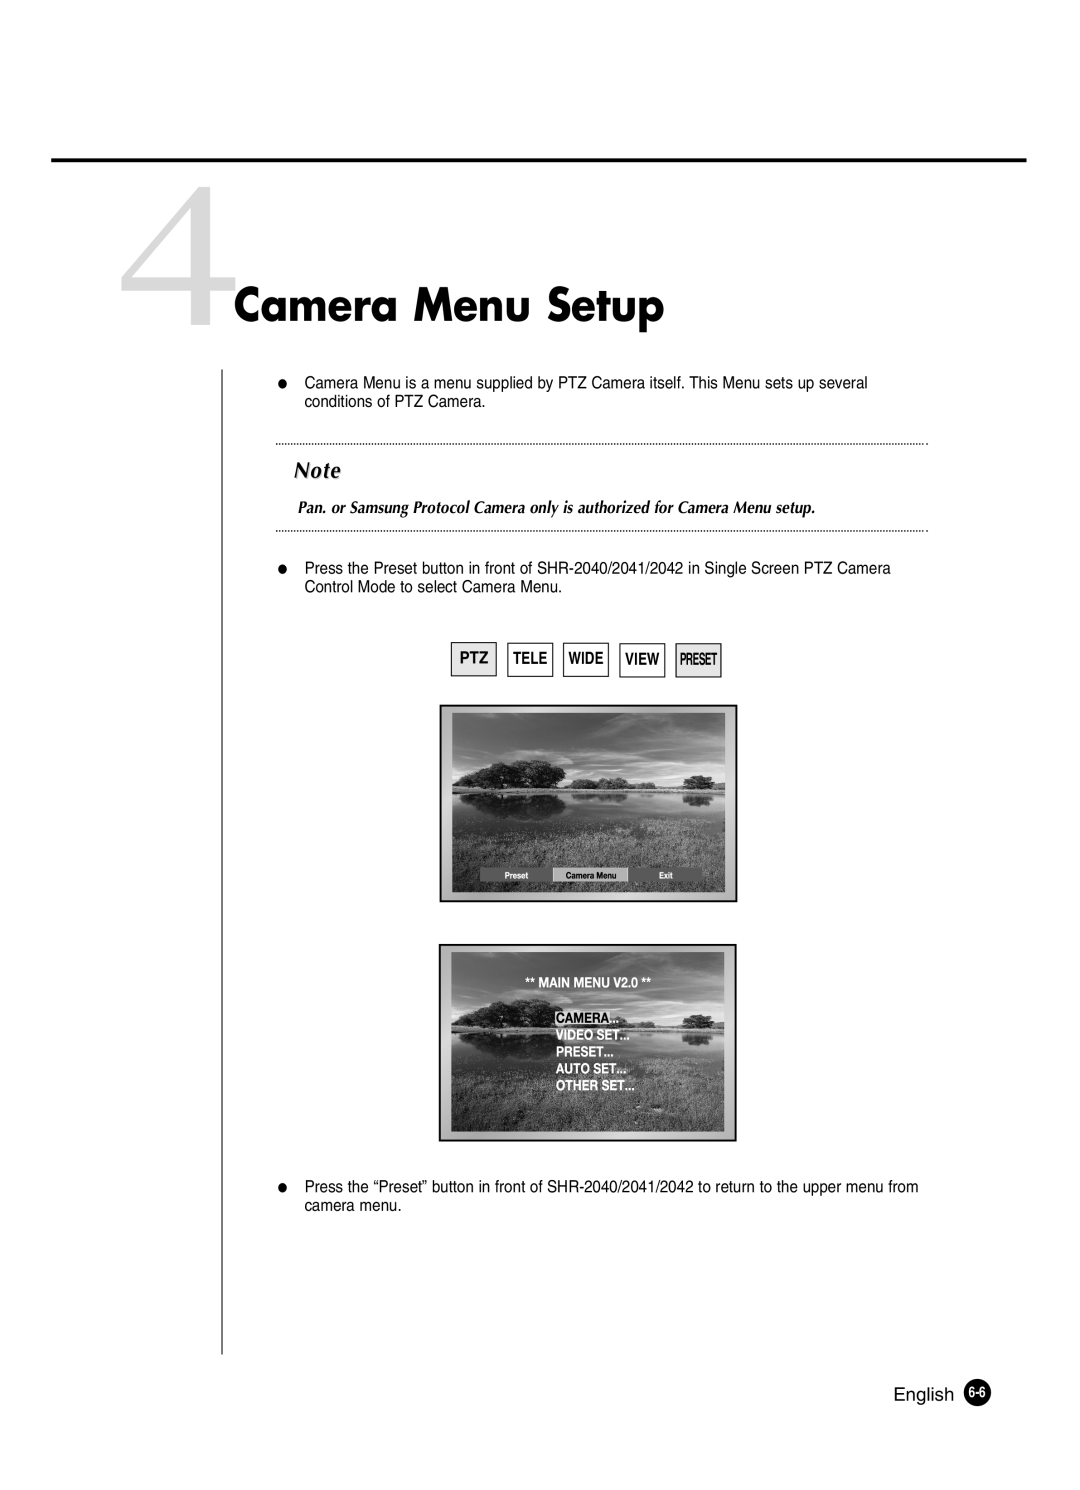 Samsung SHR-2040P250, SHR-2042P250 manual 4Camera Menu Setup, Ptz Tele, Wide View Preset 